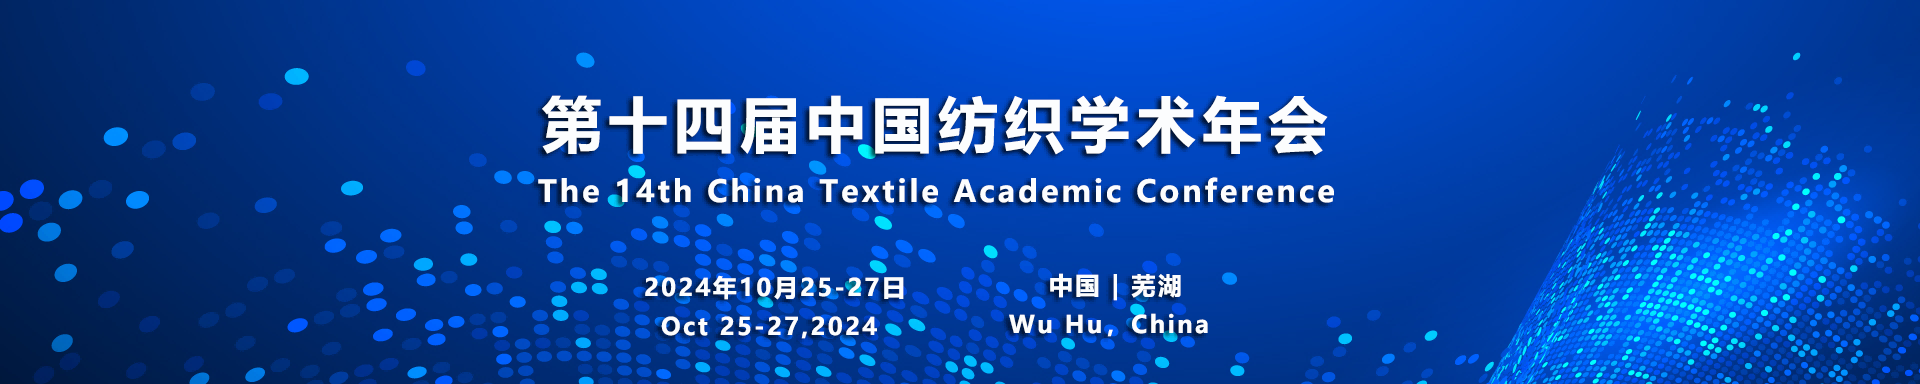 表彰奖励 - 第十四届中国纺织学术年会